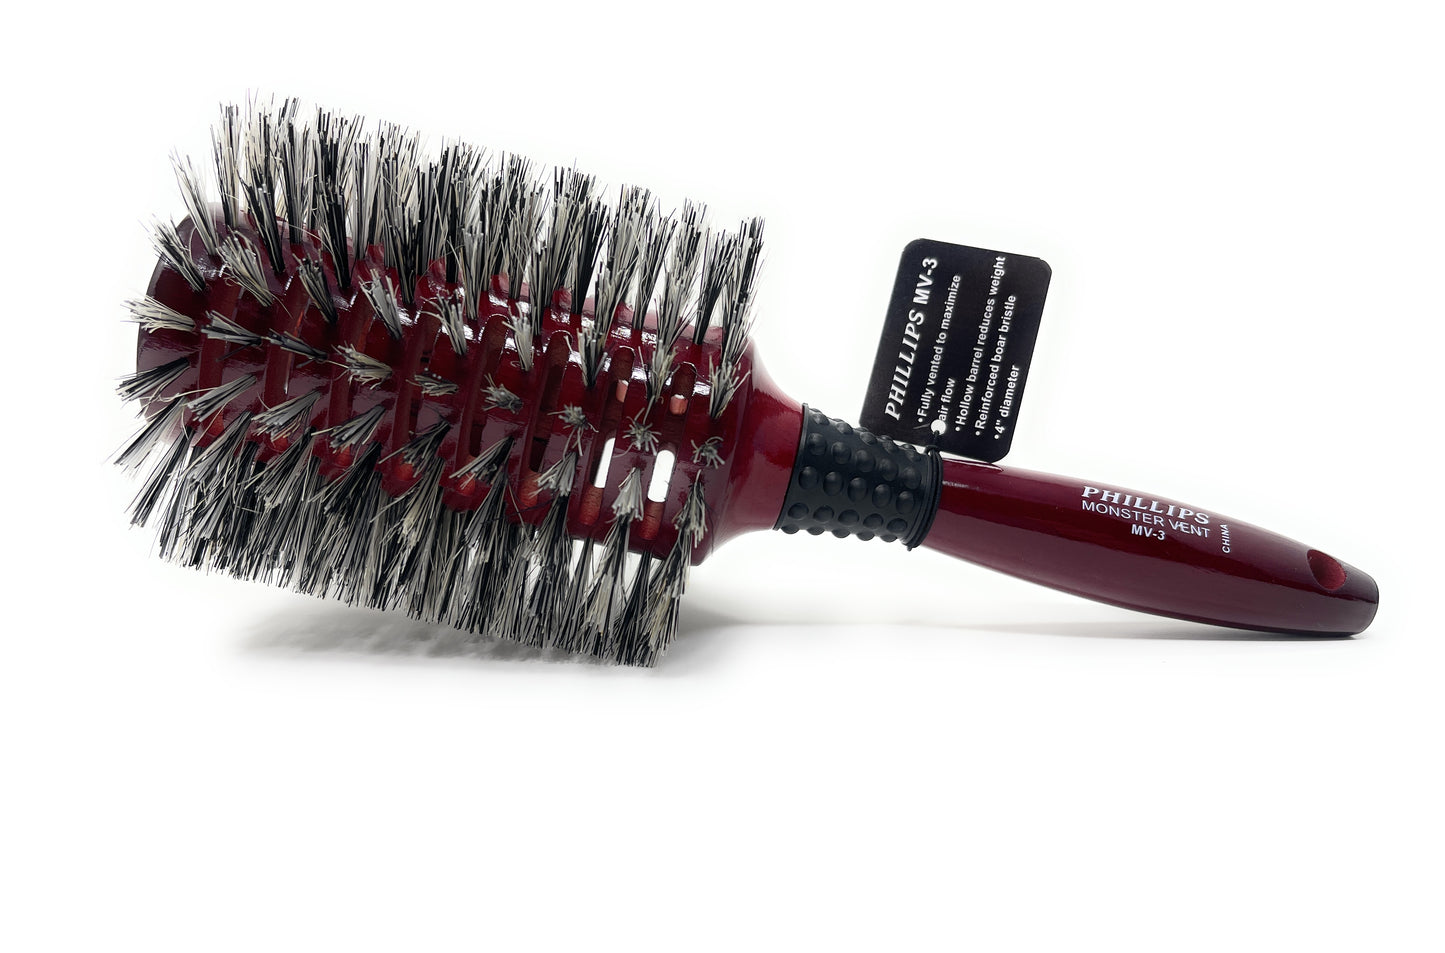 Phillips Brush Monster Vent Barrel Reinforced Bristle Wood Hair Dry Brush For Woman Men 1 Pc. MV-3